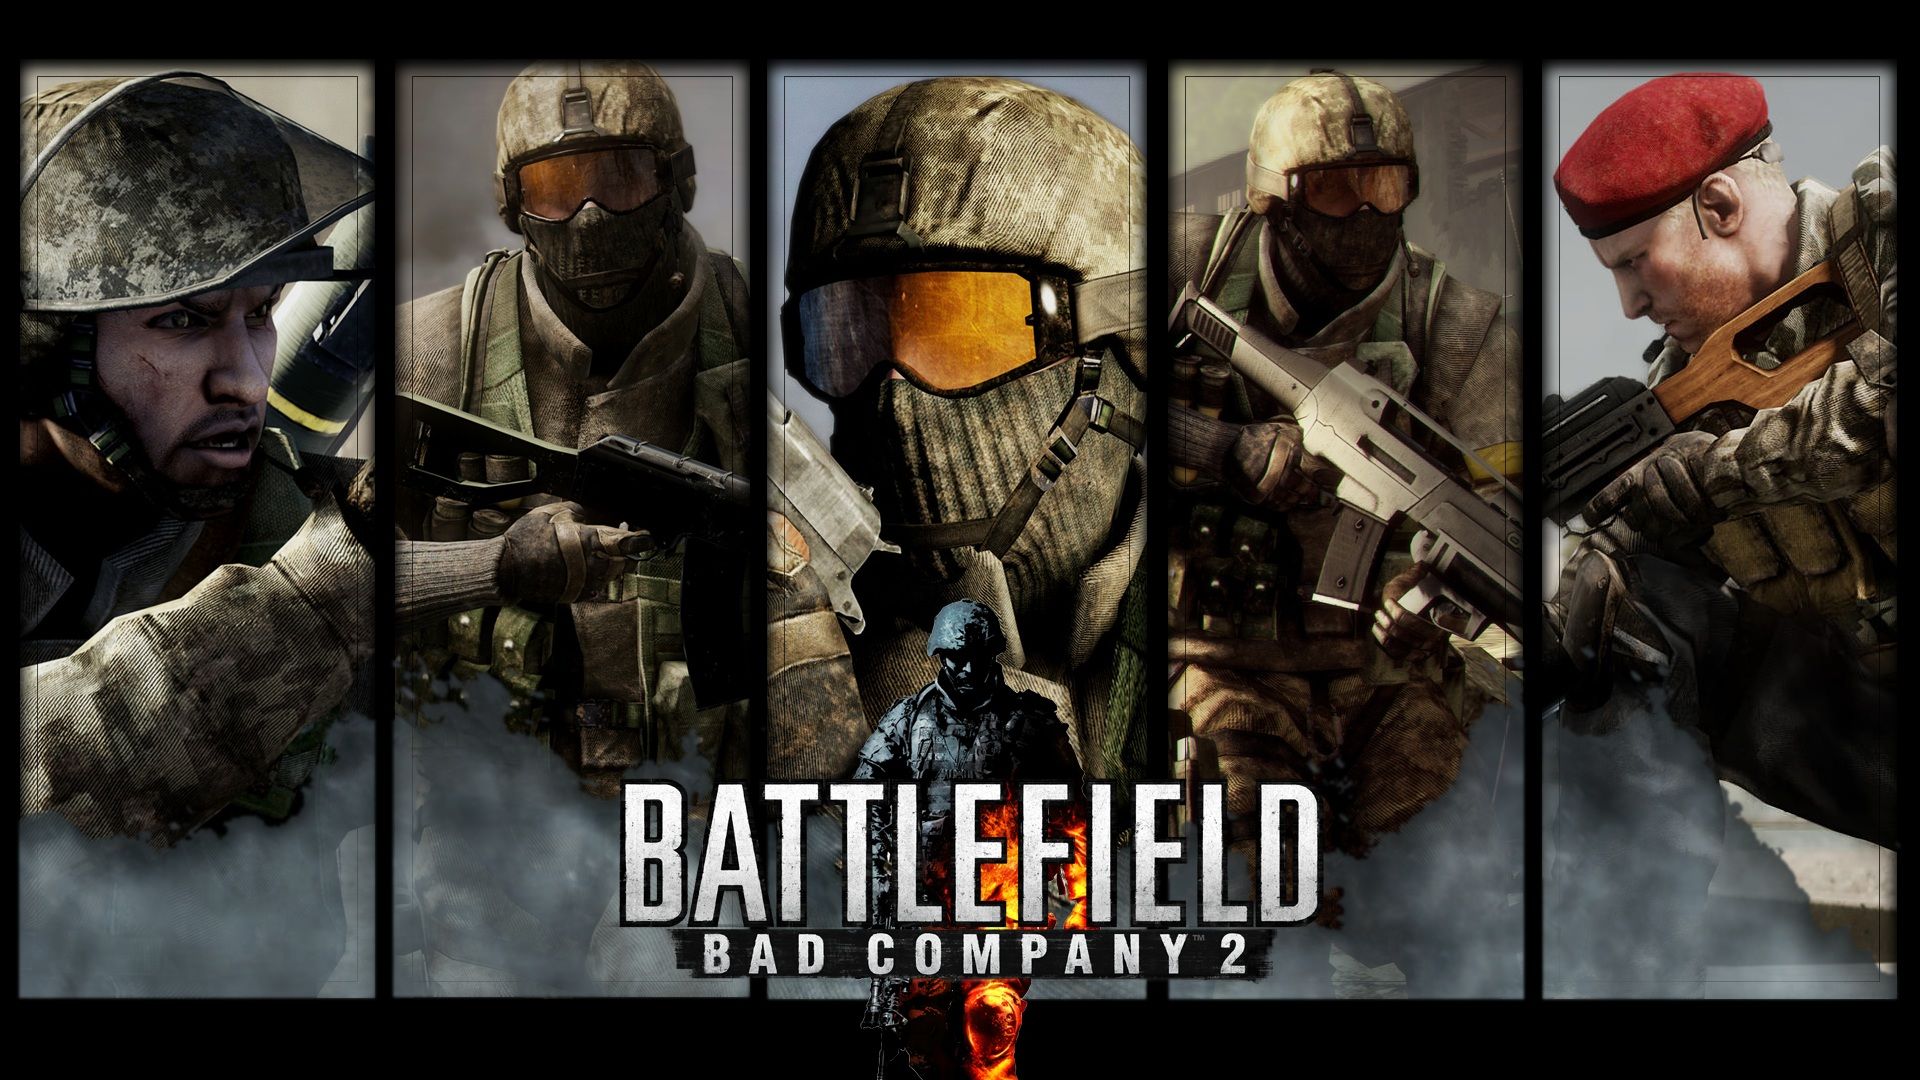 Battlefield bad company 2 Wallpaper 4. Games wallpaper HD